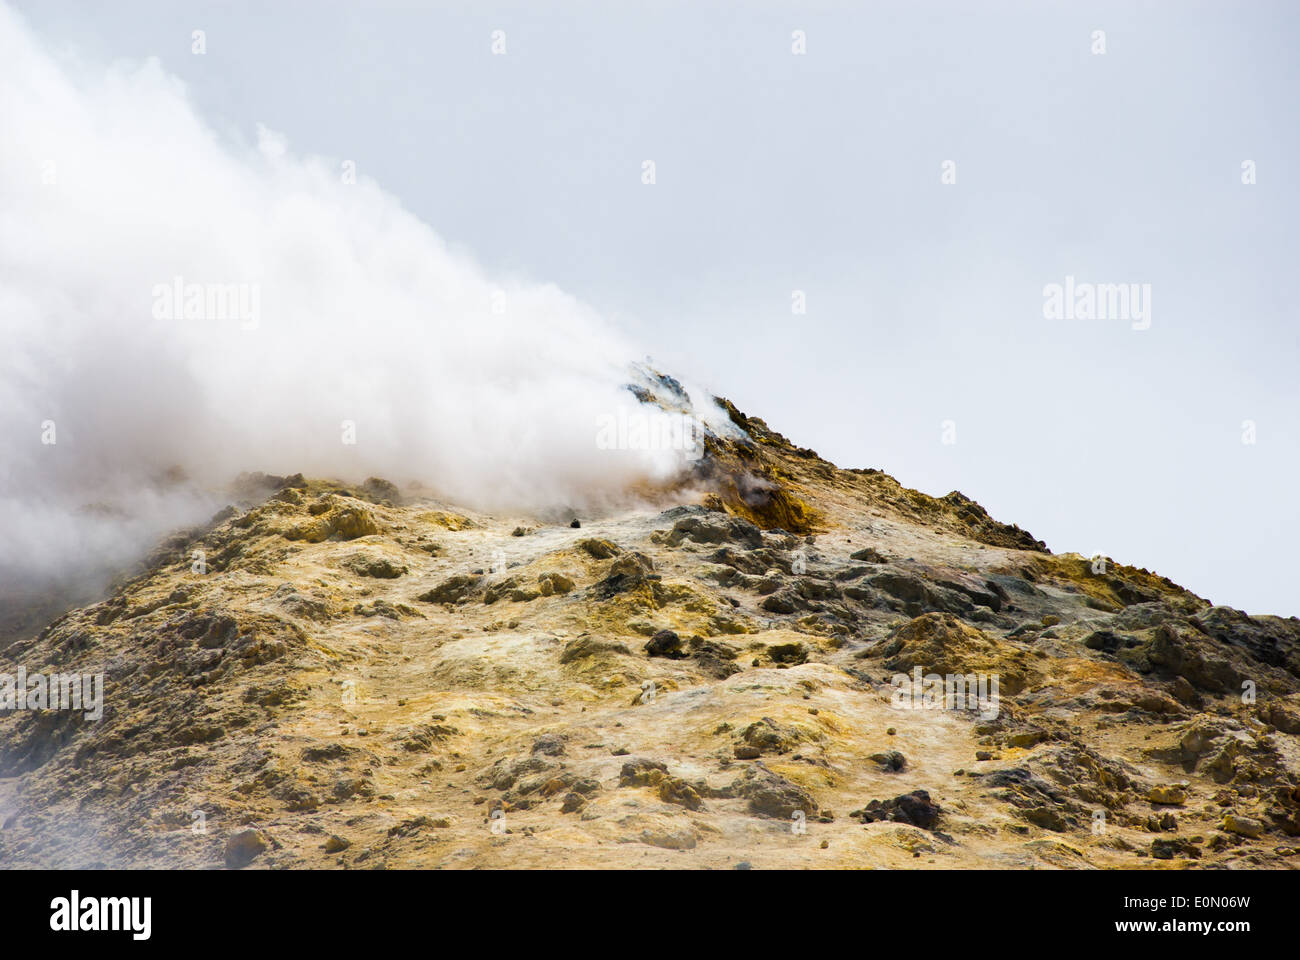 Sulla sommità del vulcano Etna il rock è coperto con zolfo e diventa gialla, nube di gas tossico diffuso dal cratere Foto Stock